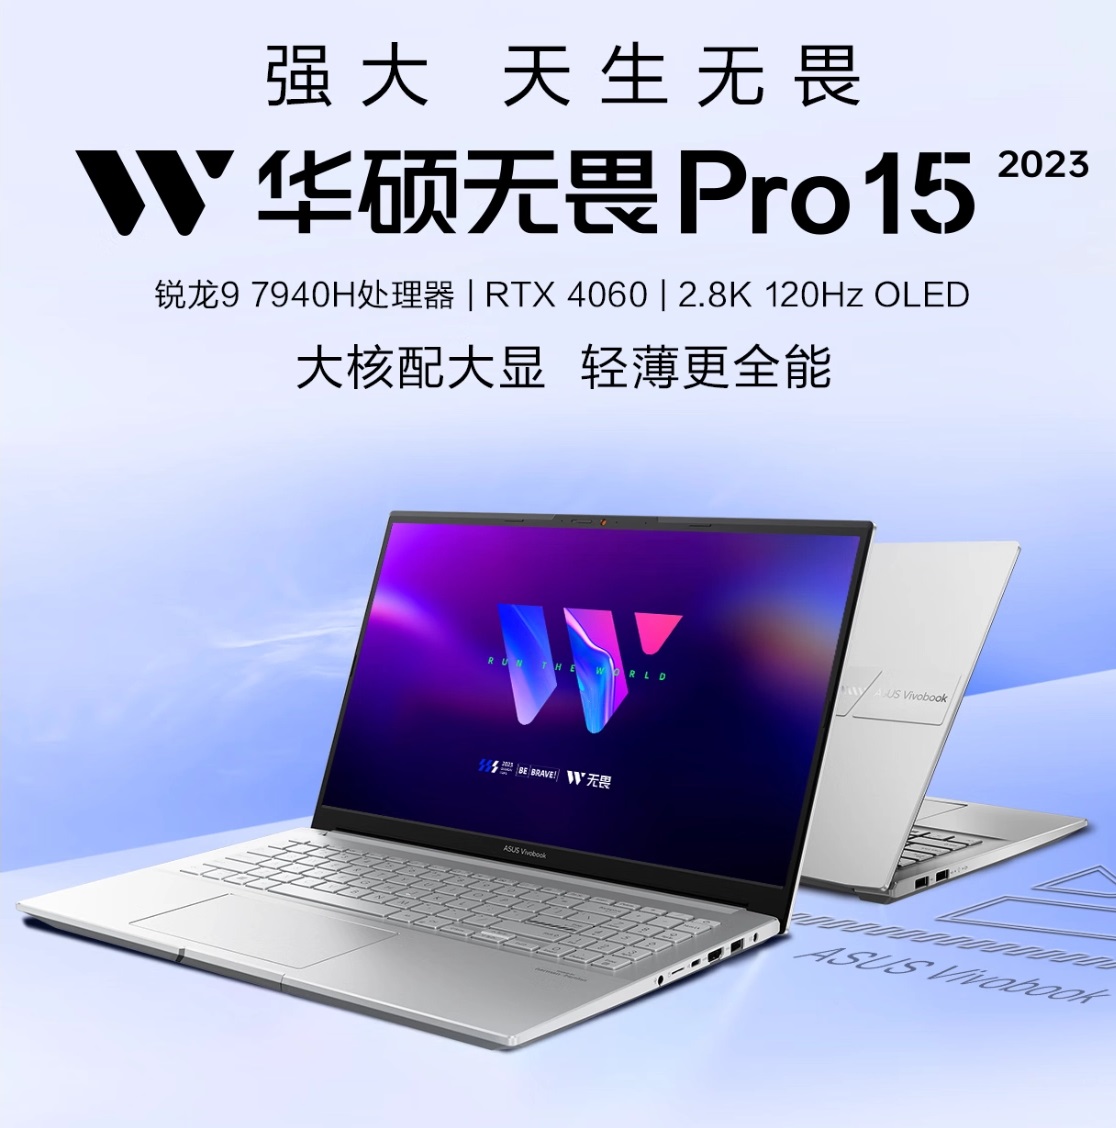 ноутбук ASUS Dauntless Pro 15 2023 Ryzen Edition